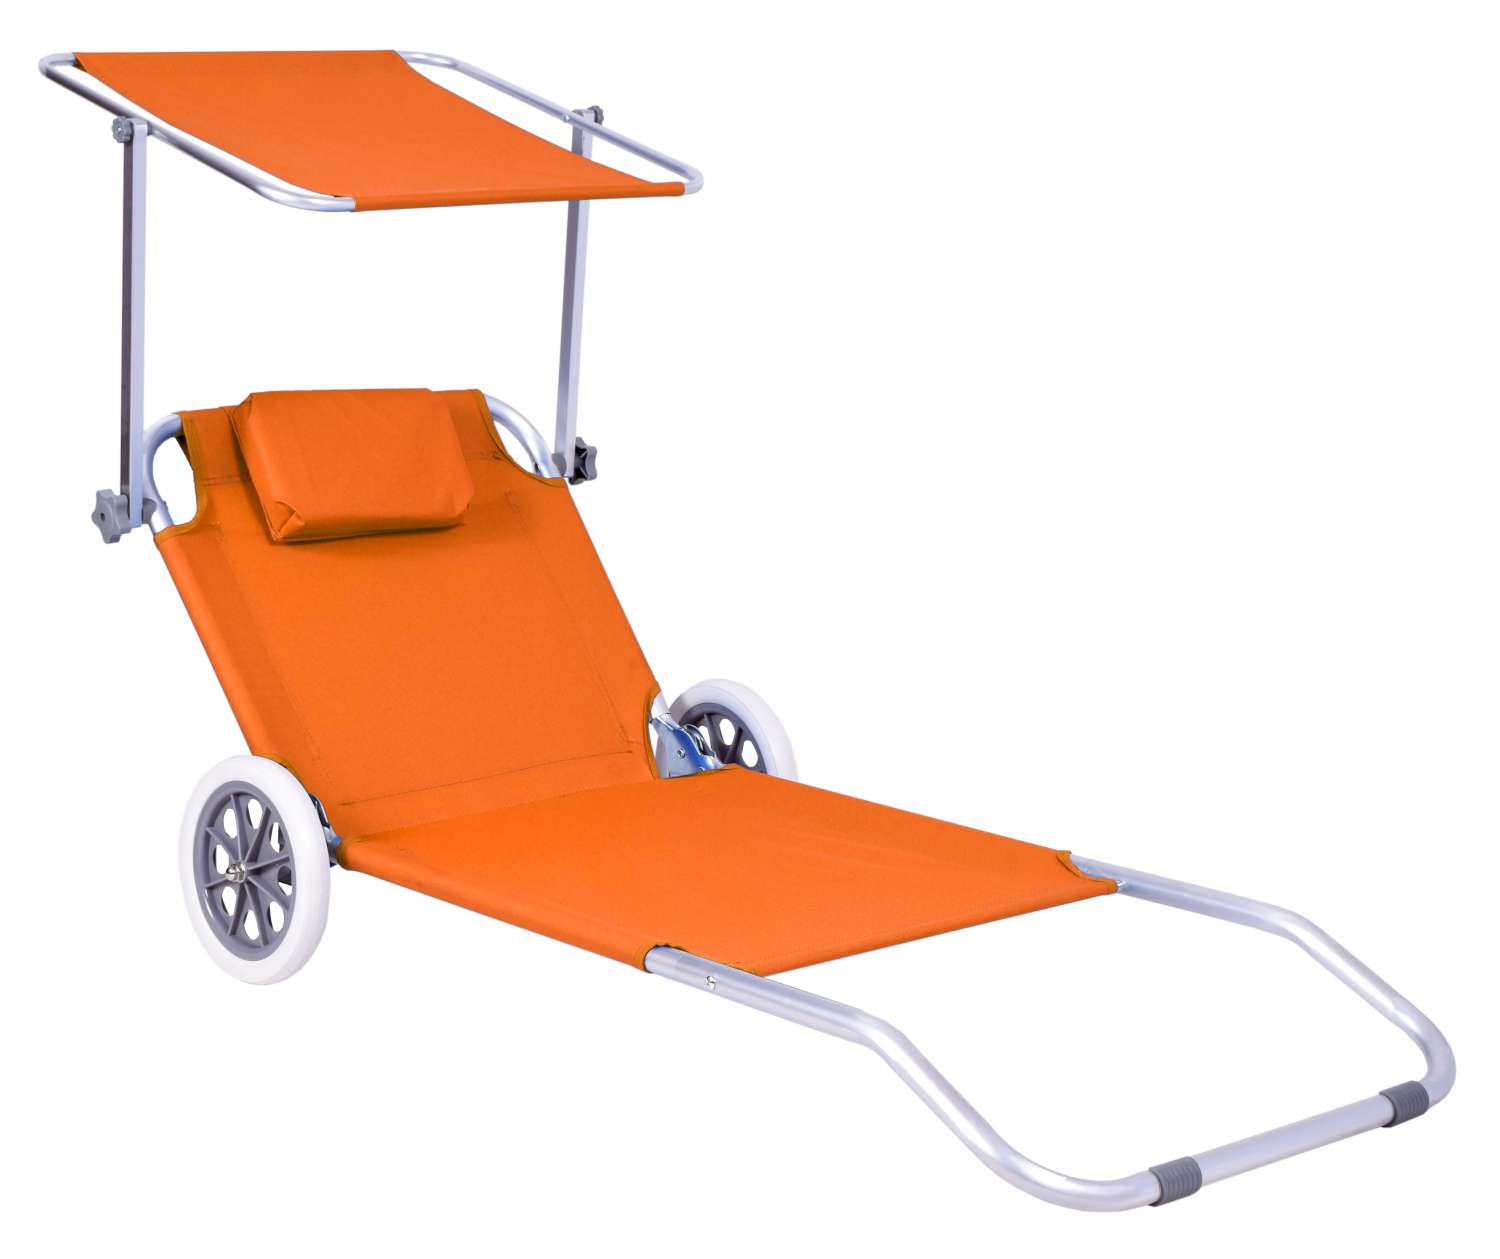 Leżak plażowy z kółkami Martin pomarańczowy ORANGE